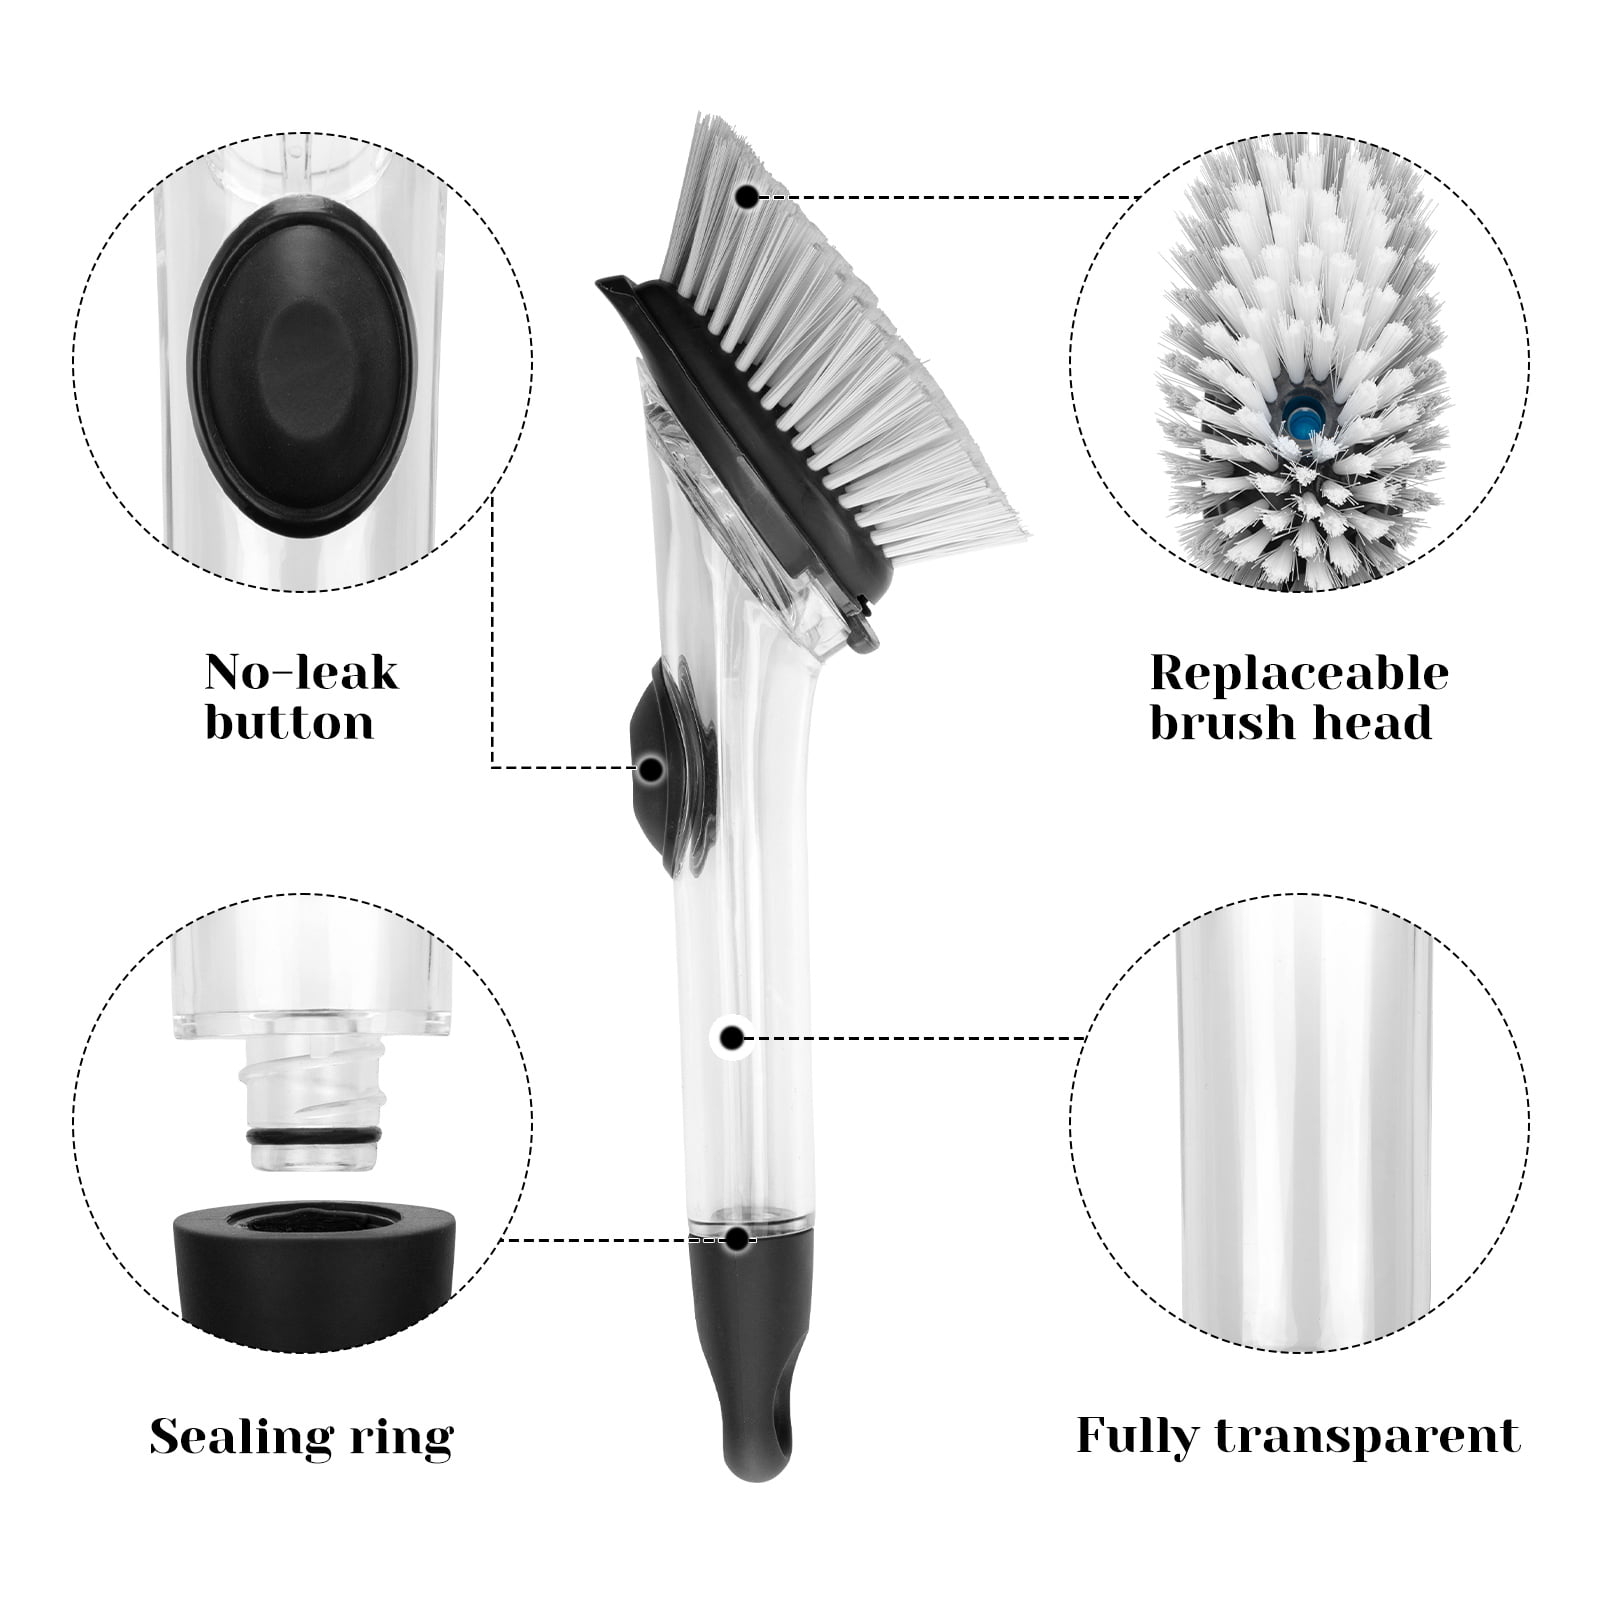 Handheld Dish Brush — White Bristle